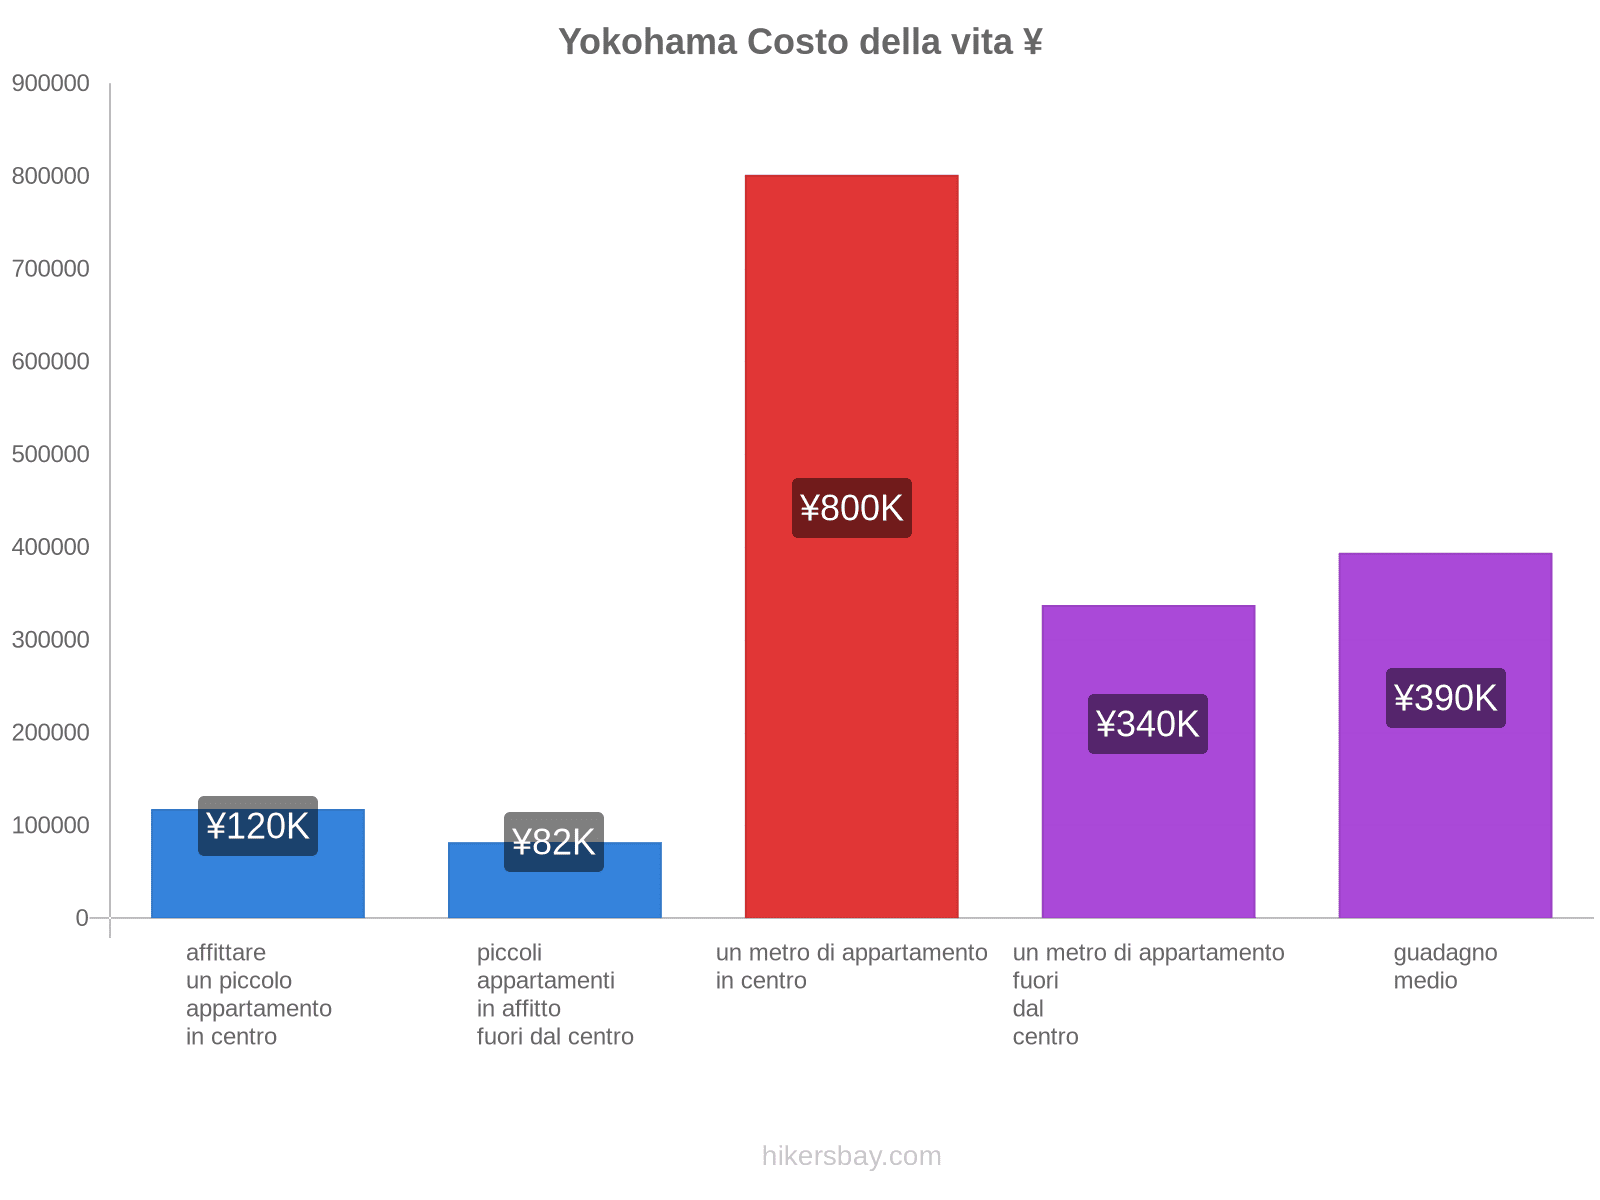 Yokohama costo della vita hikersbay.com